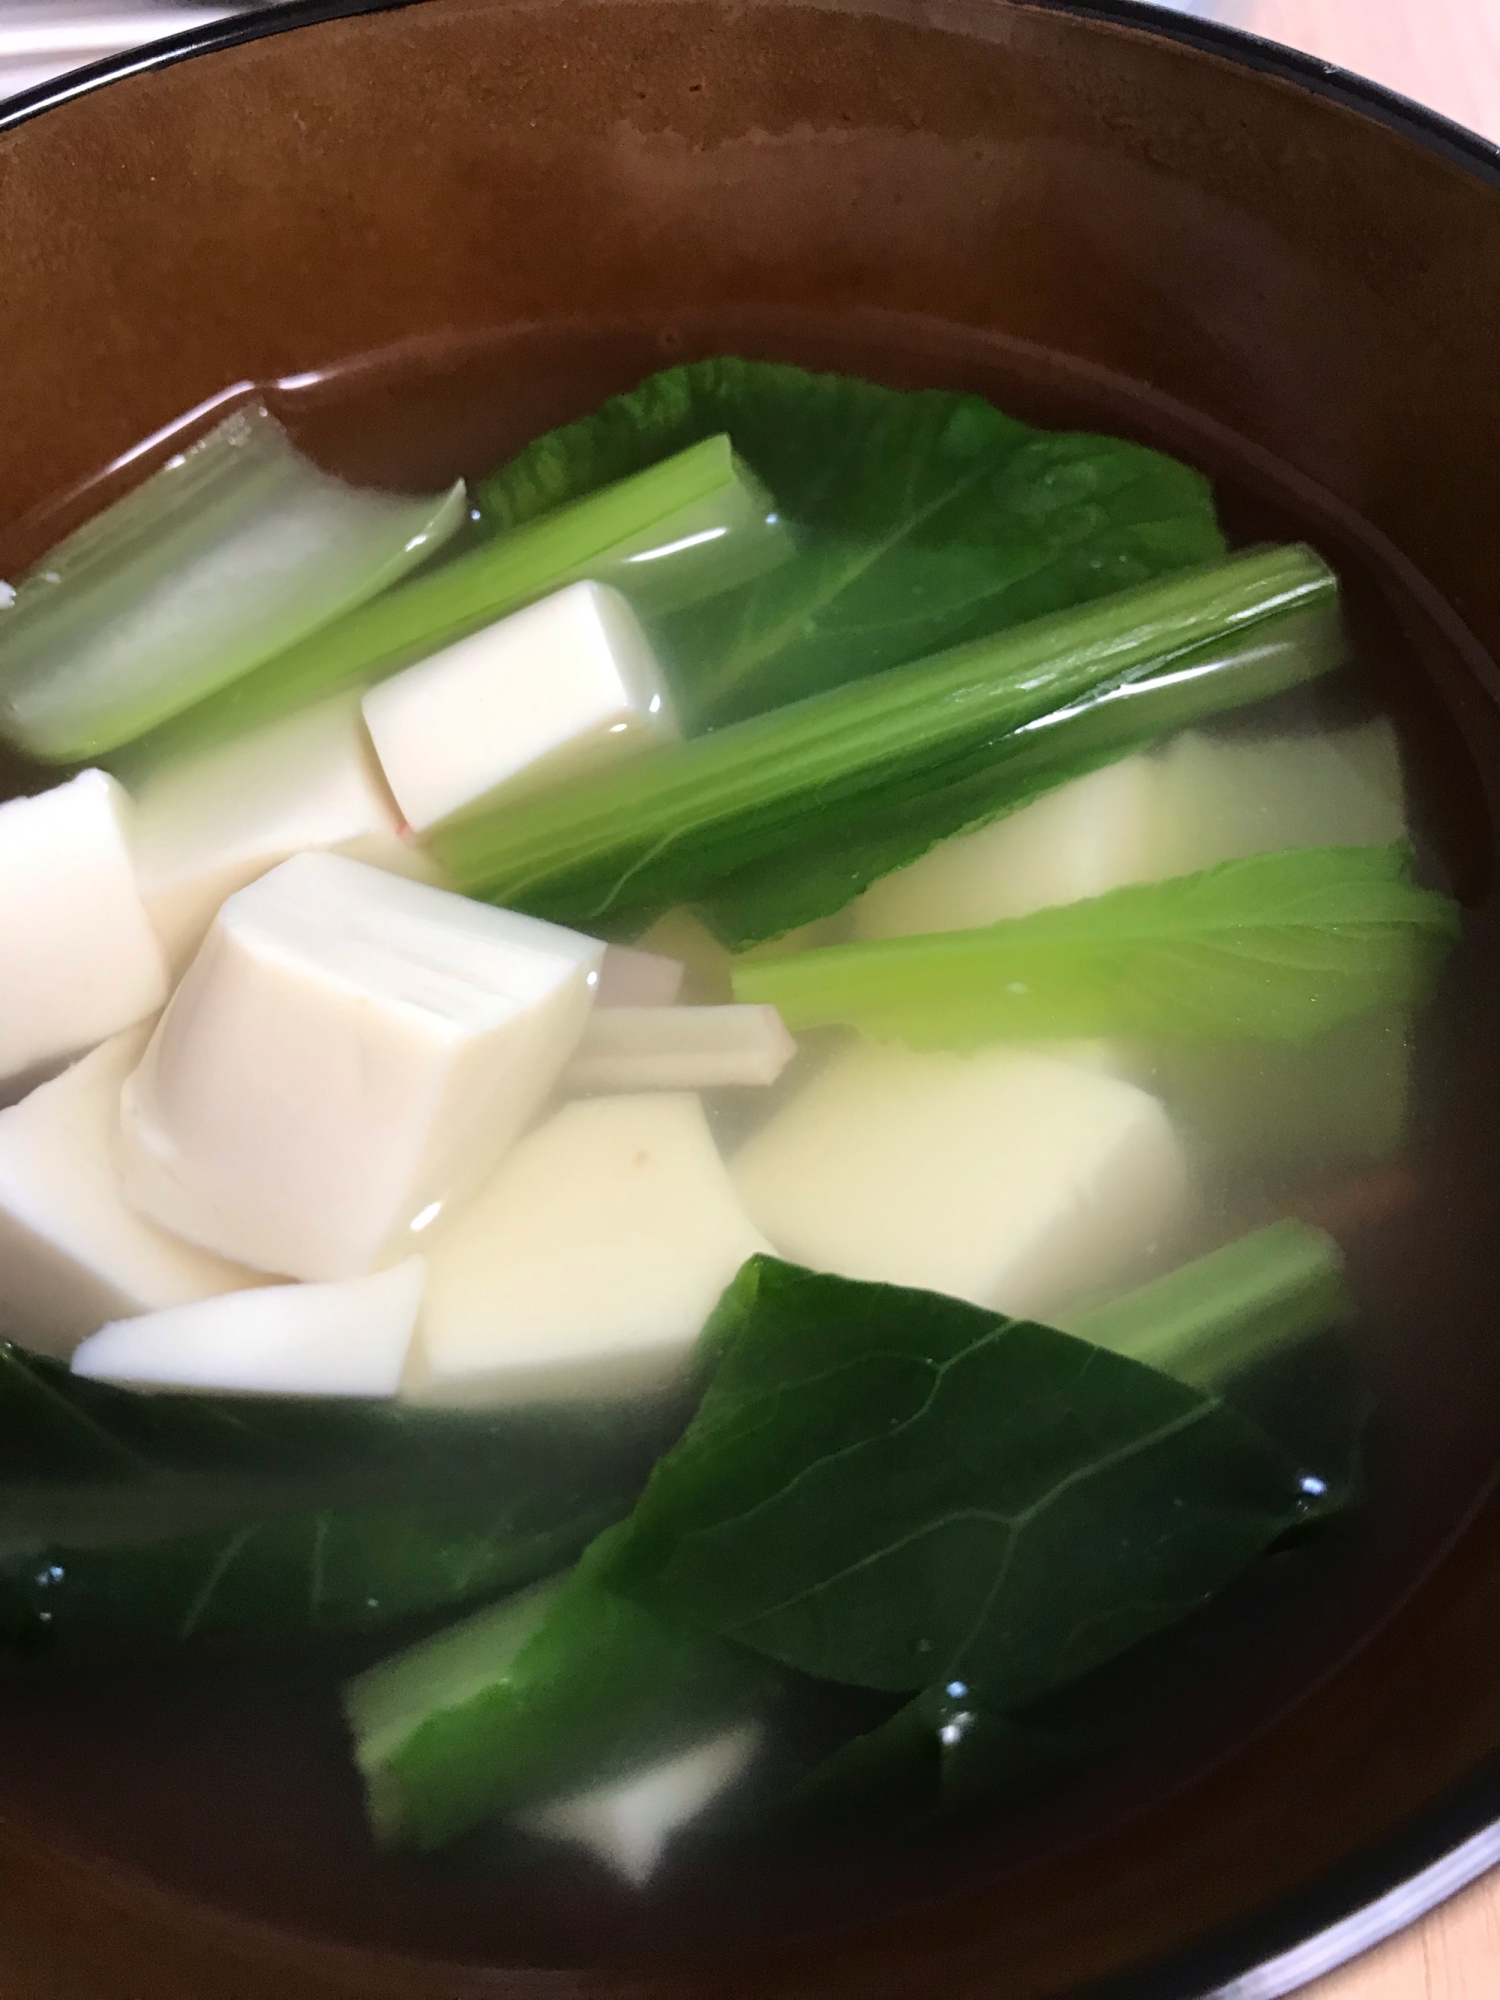 小松菜と豆腐の中華スープ